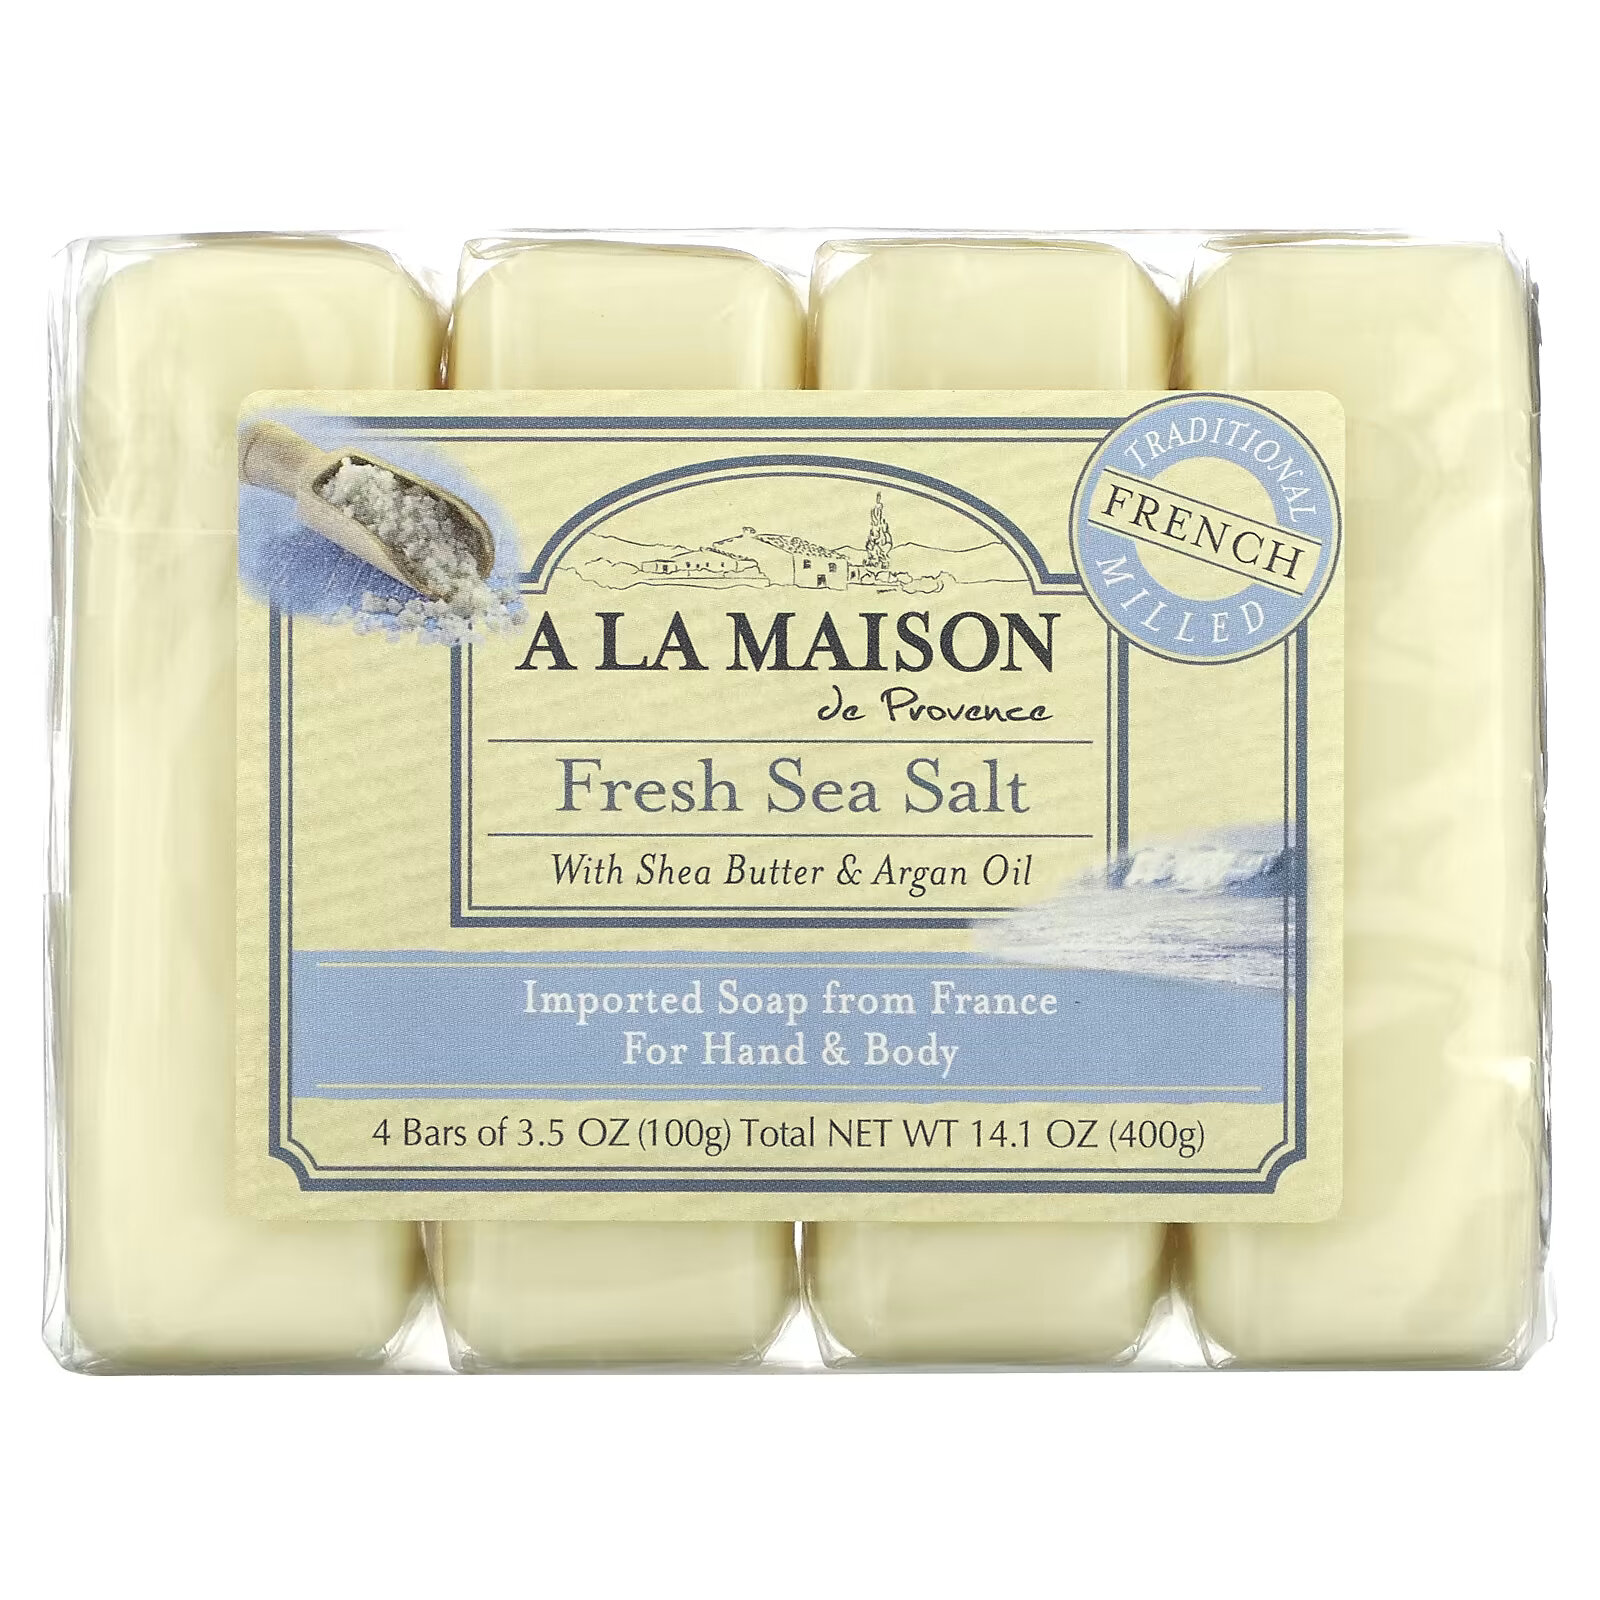 A La Maison de Provence, мыло для рук и тела, морская соль, 4 бруска по 100 г (3,5 унции) каждый a la maison de provence кусковое мыло для рук и тела с овсяным молоком 4 куска по 100 г 3 5 унции каждый